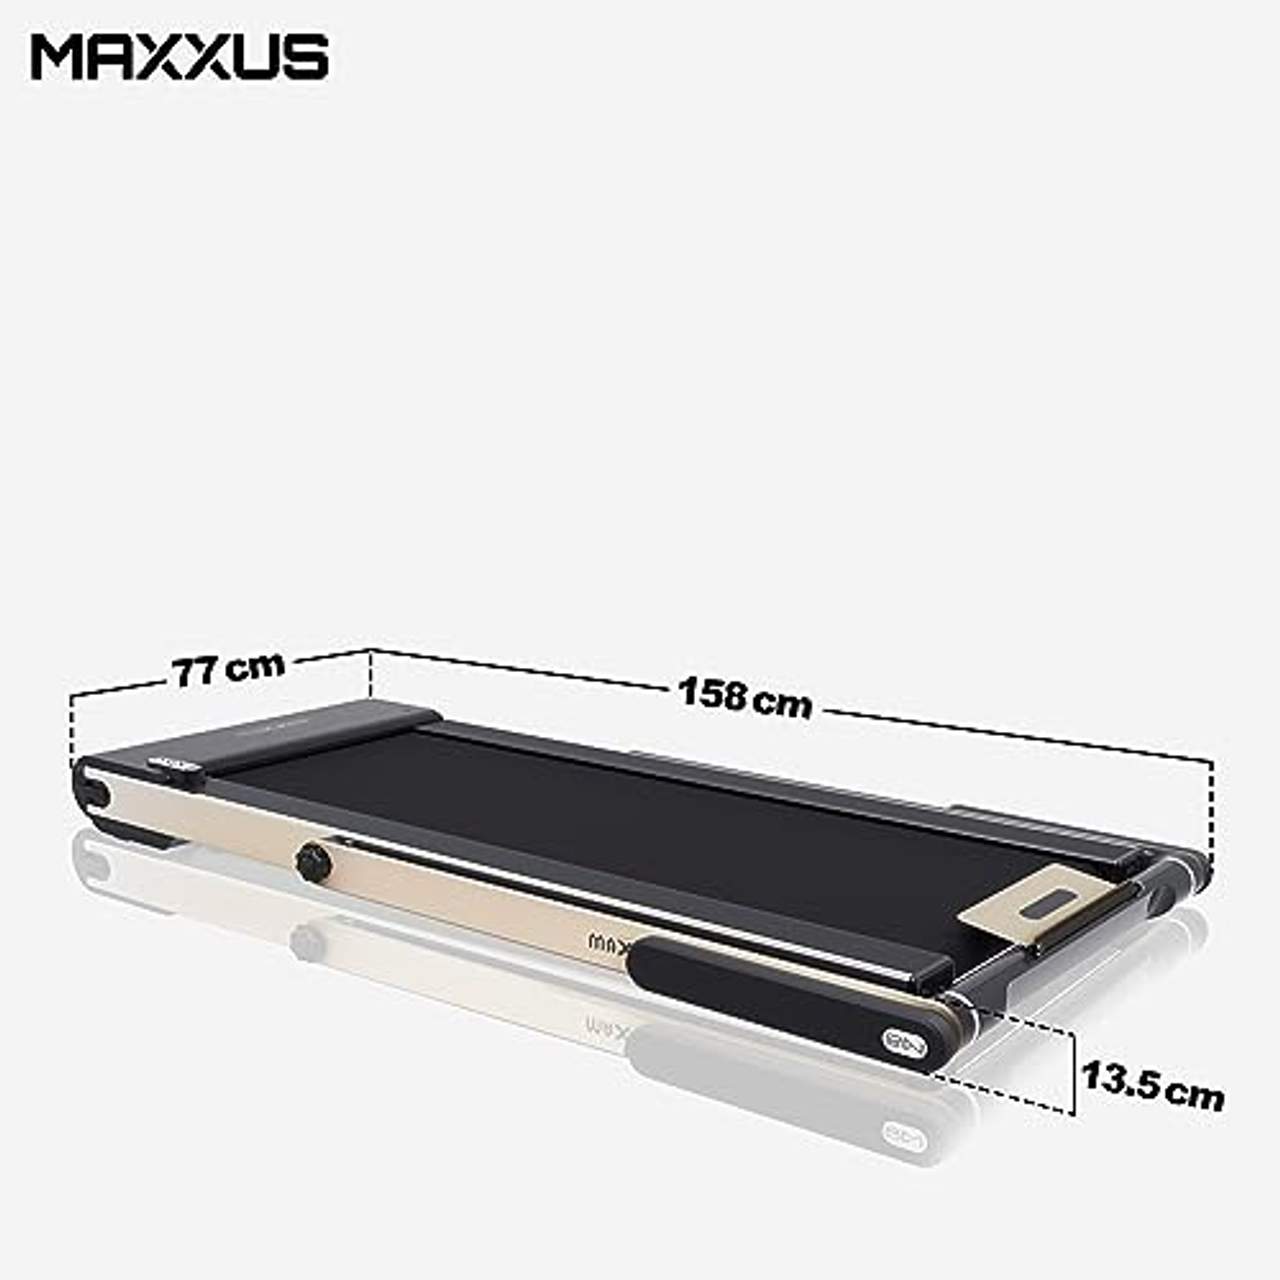 Maxxus Laufband M8 124 x 45 cm Lauffläche